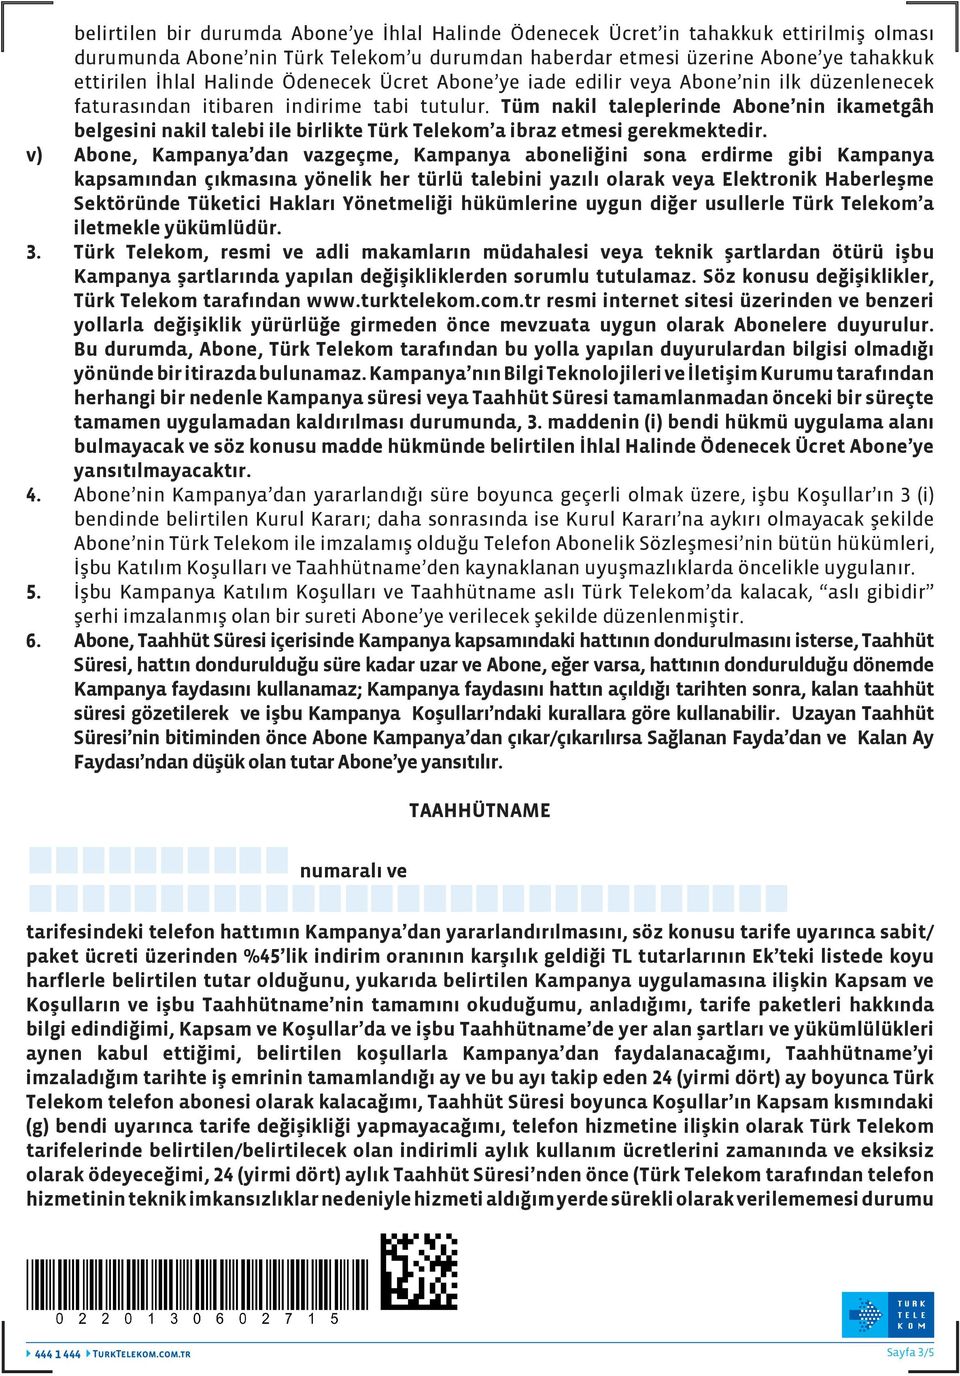 Tüm nakil taleplerinde Abone nin ikametgâh belgesini nakil talebi ile birlikte Türk Telekom a ibraz etmesi gerekmektedir.